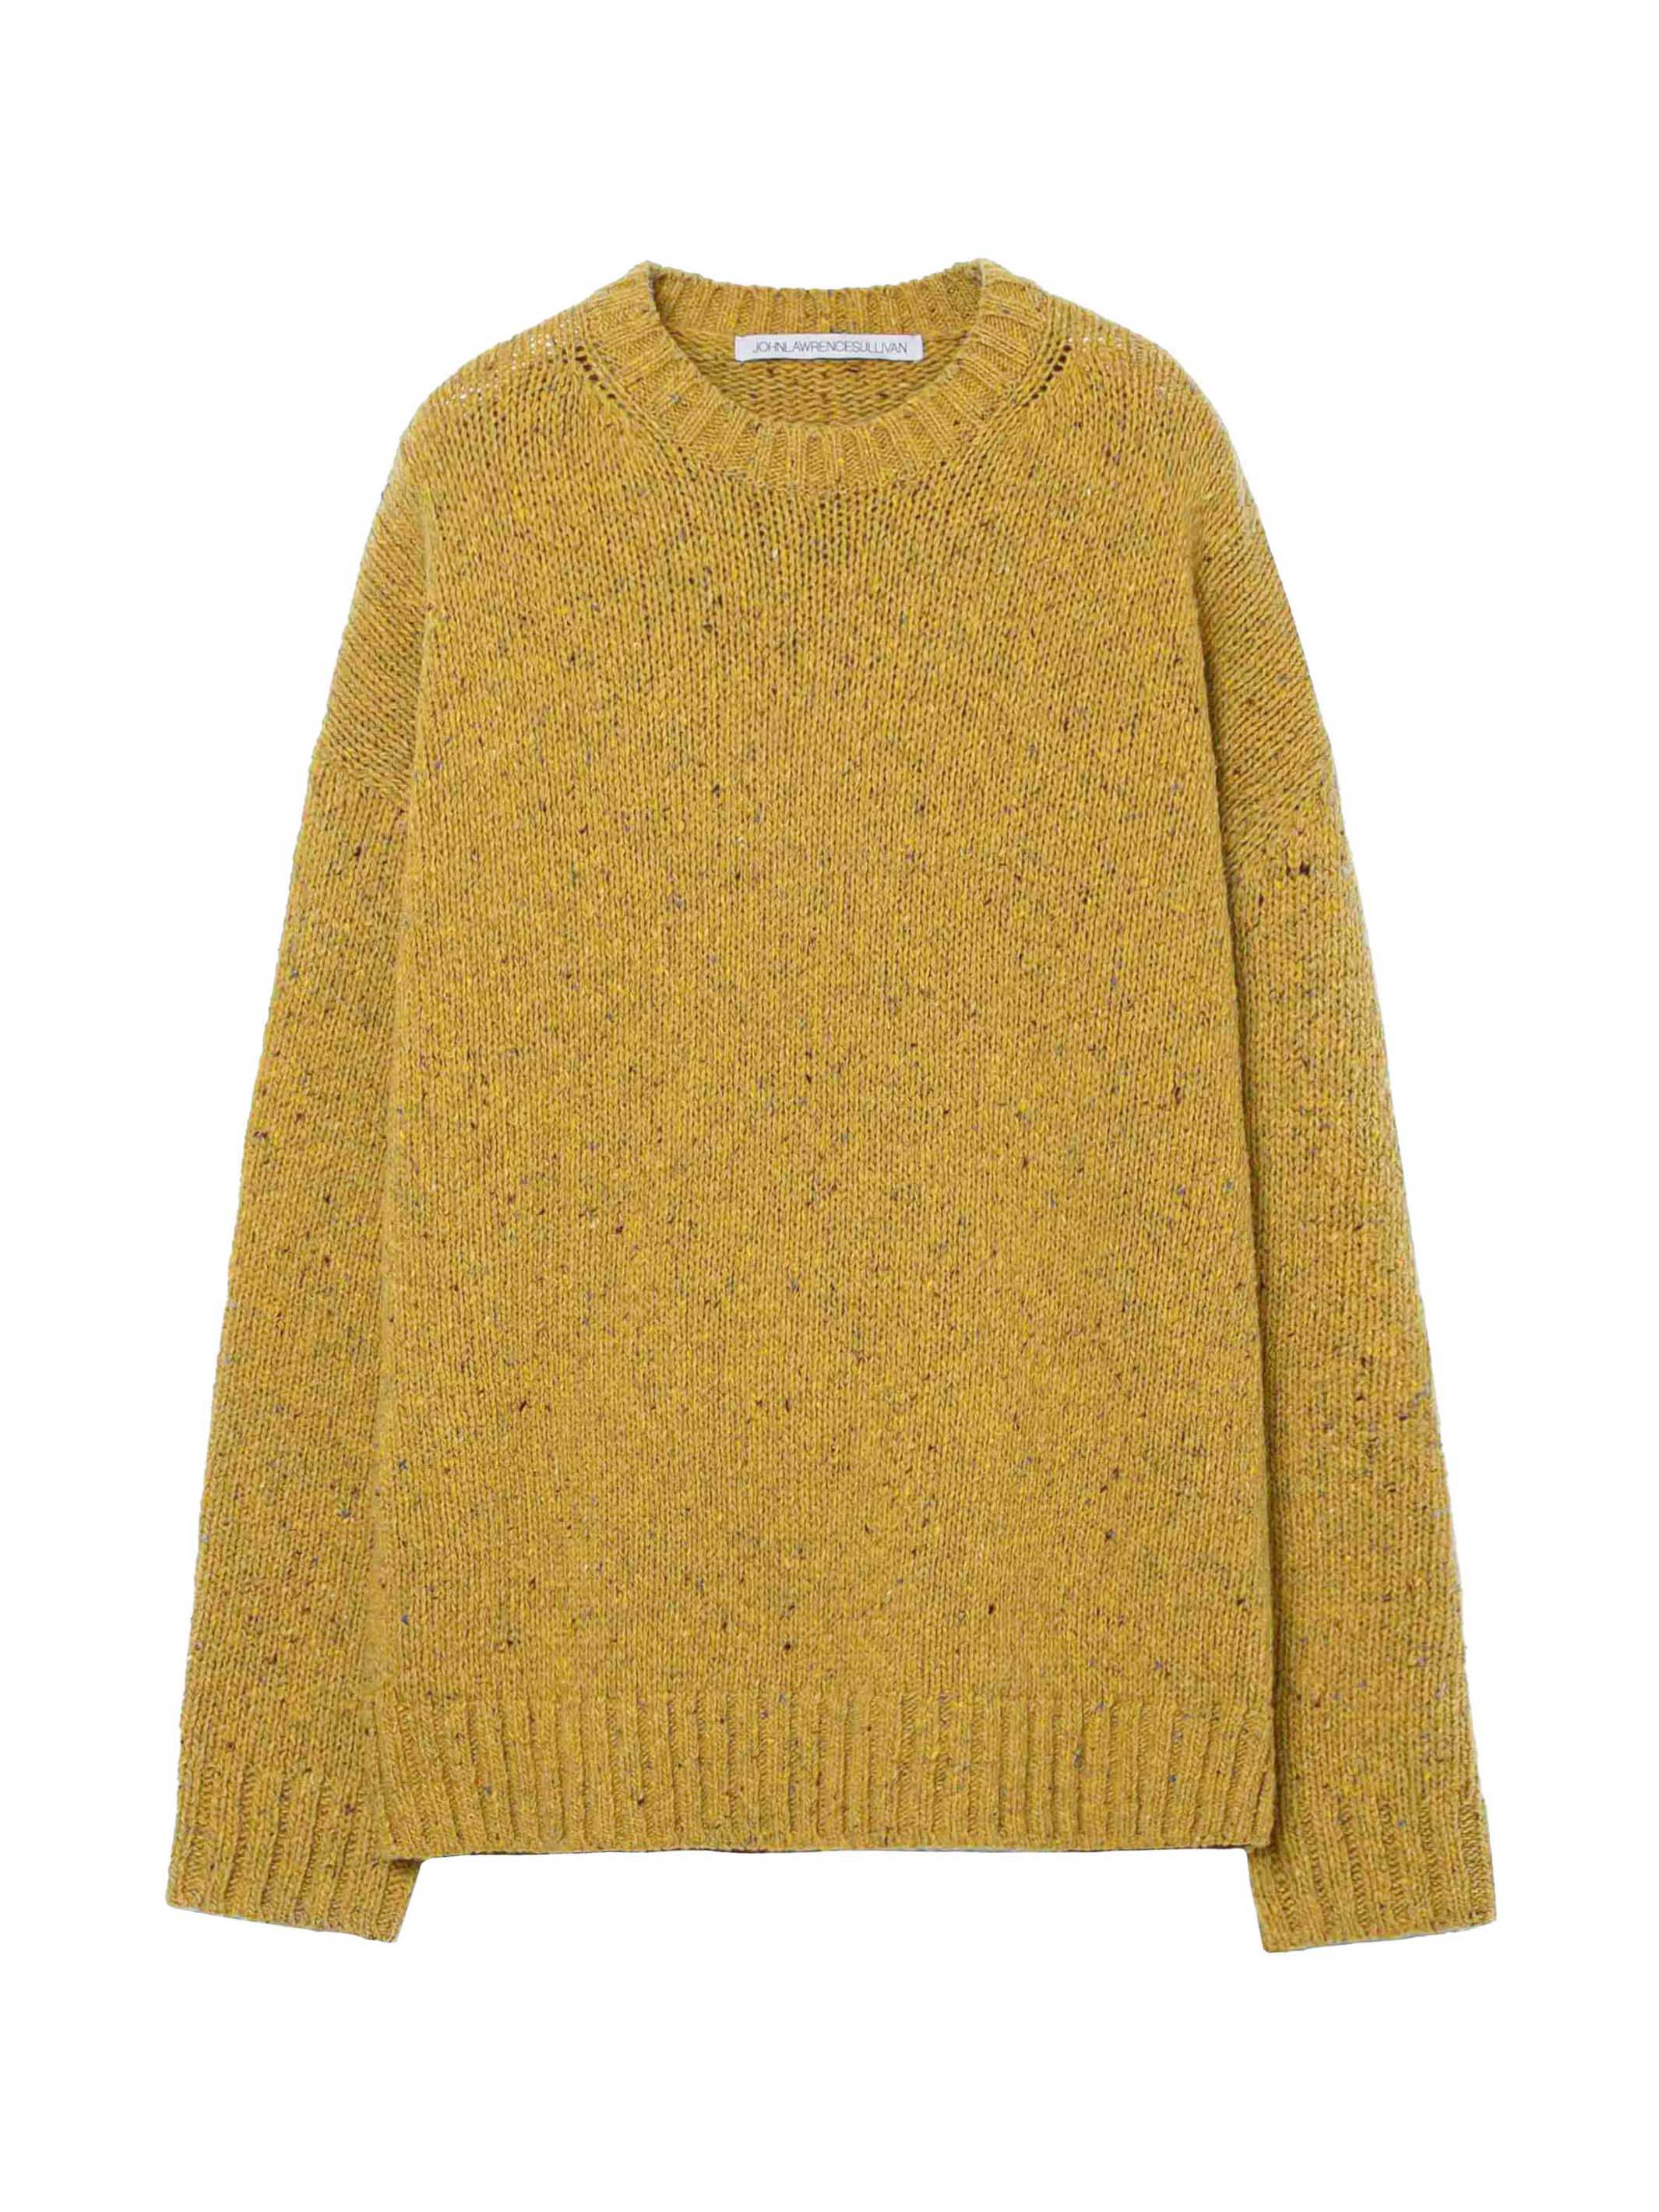 Nep yarn knit sweater